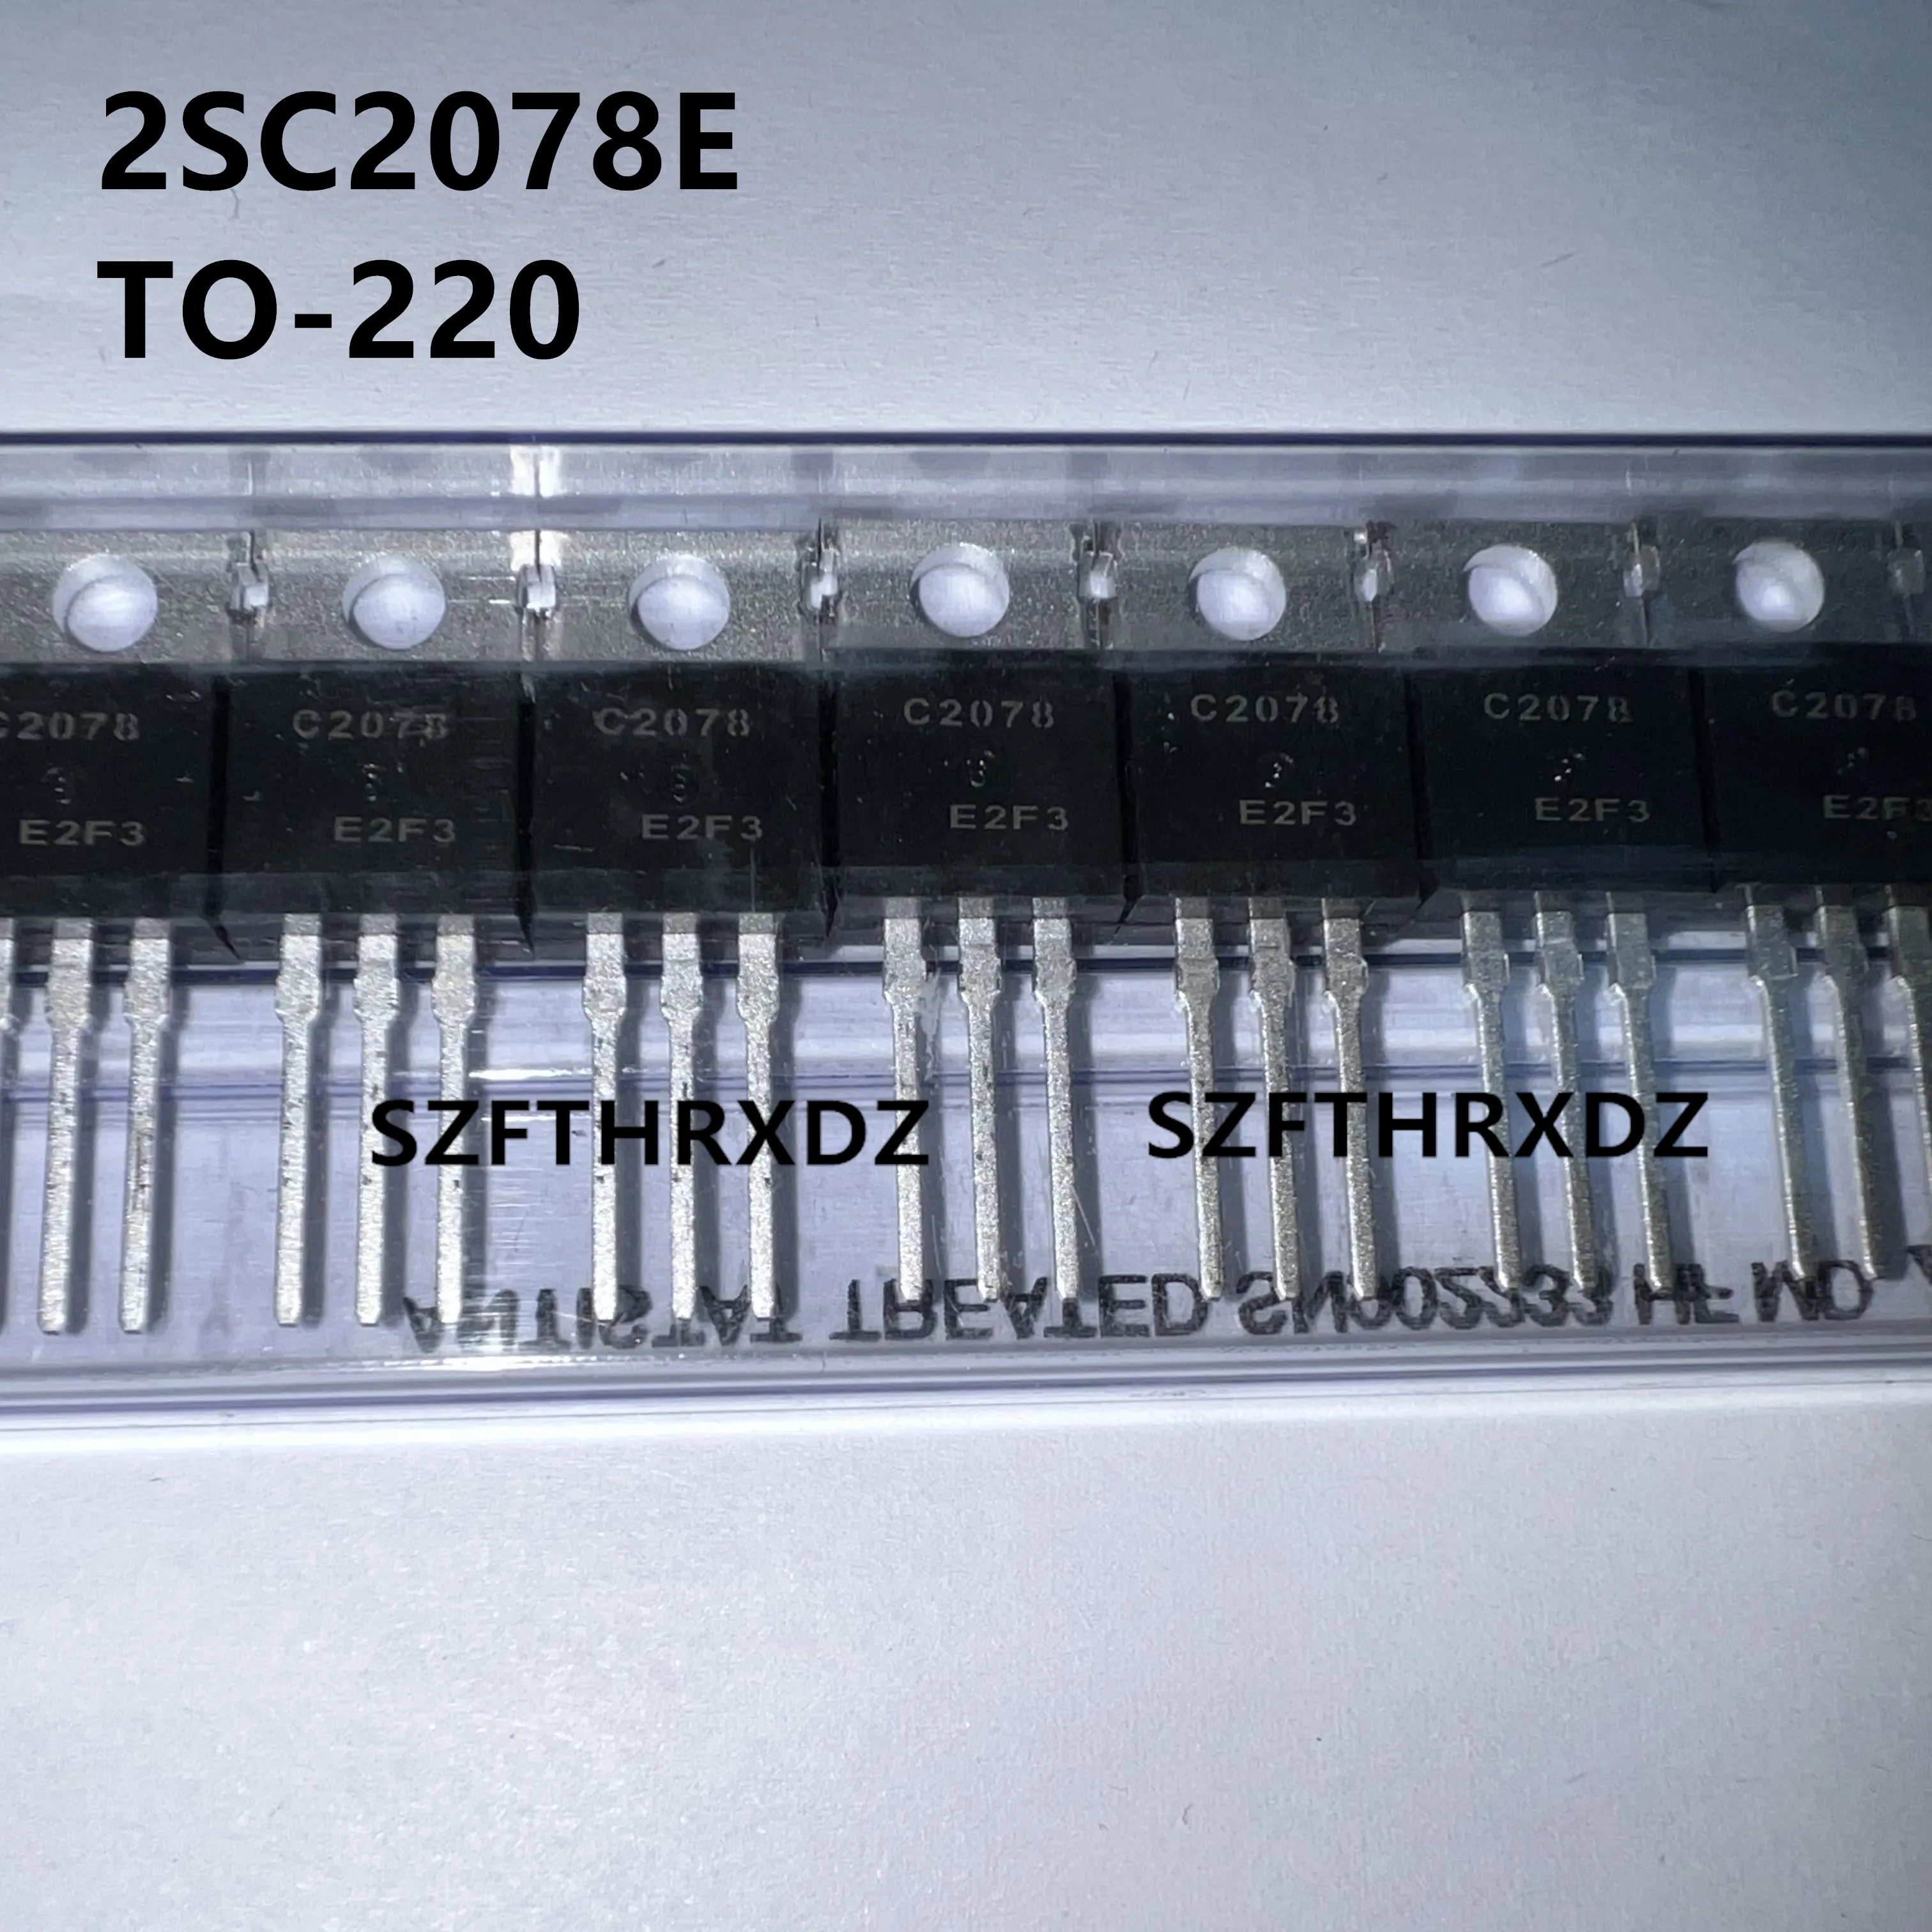 

SZFTHRXDZ 100% New Imported Original 2SC2078 2SC2078E C2078 TO-220 High Frequency Power Tube 3A 80V Triode